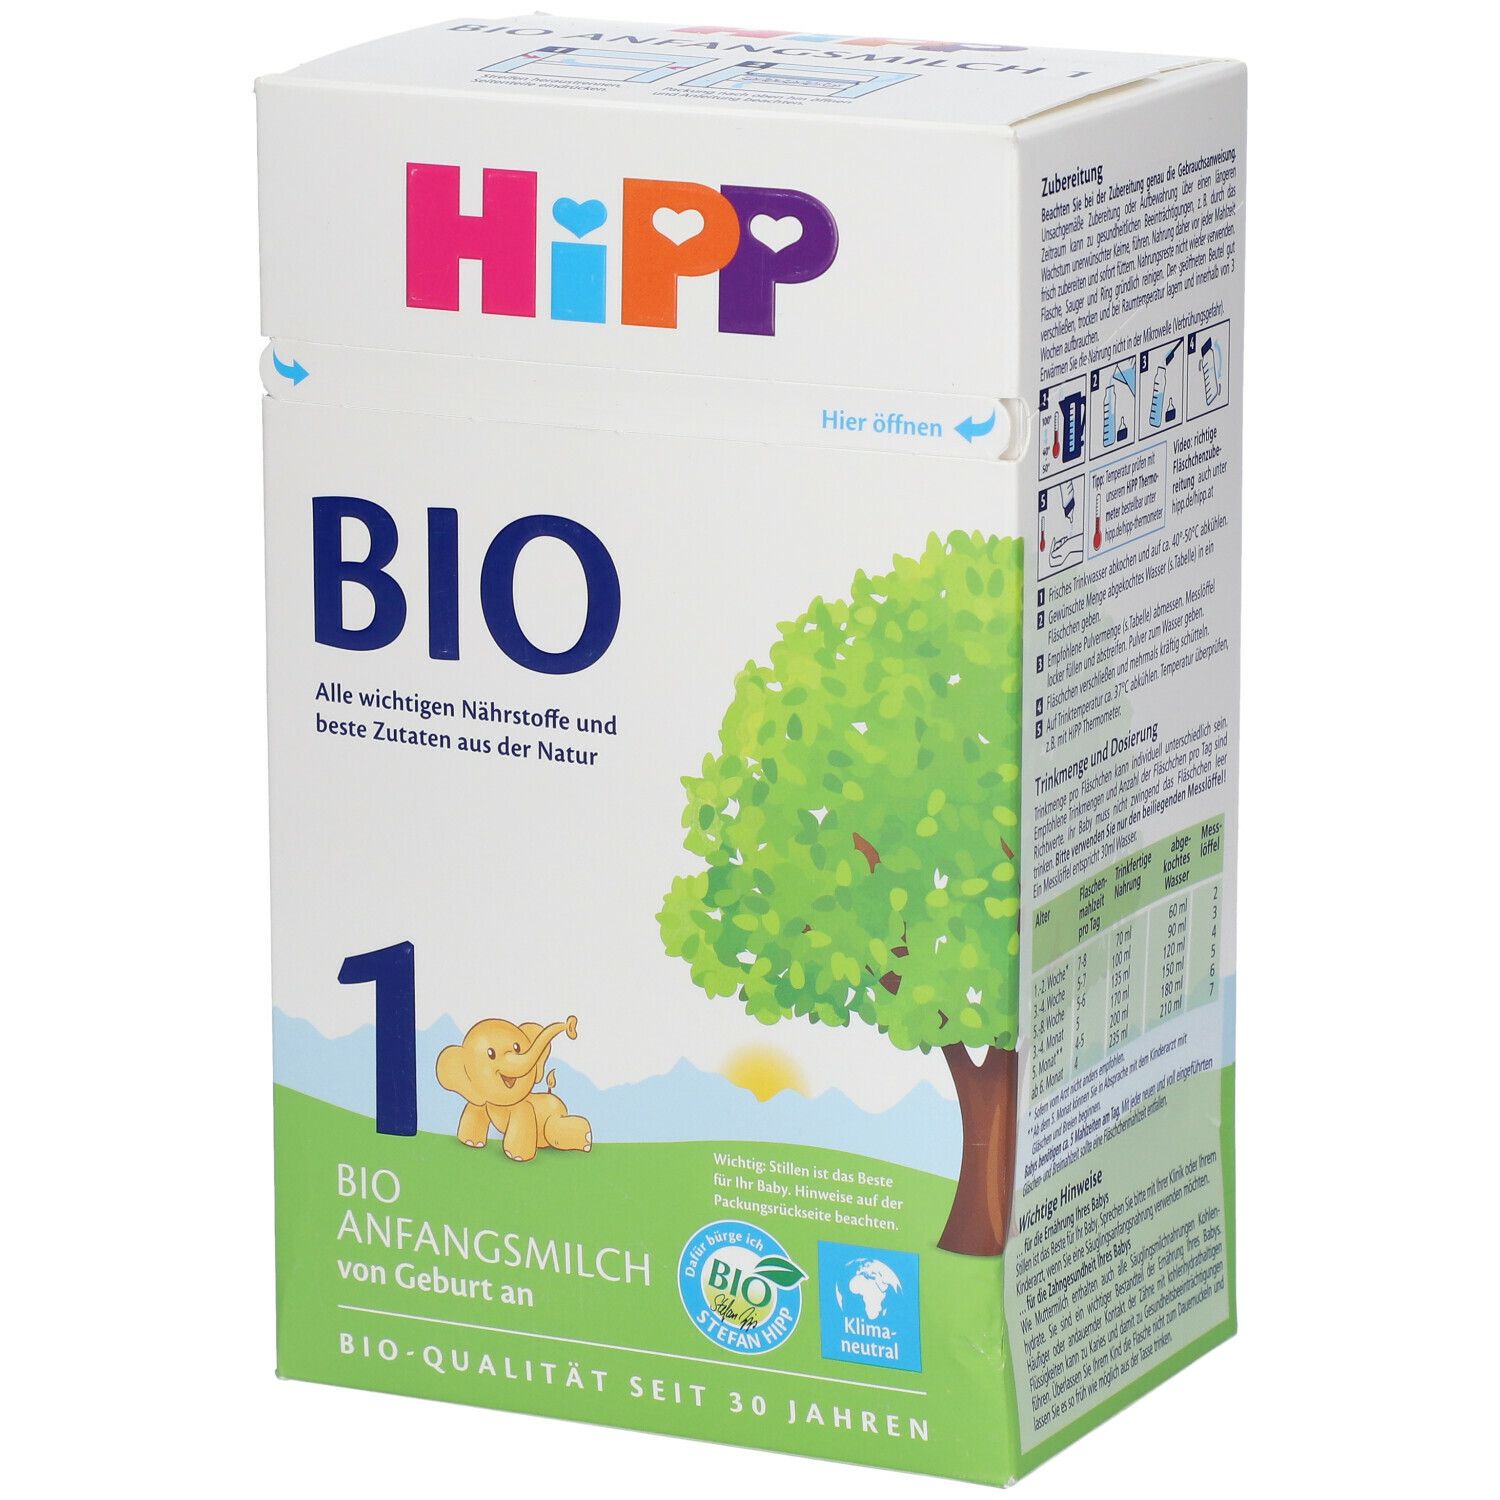 Hipp Bio 1 Anfangsmilch von Geburt an